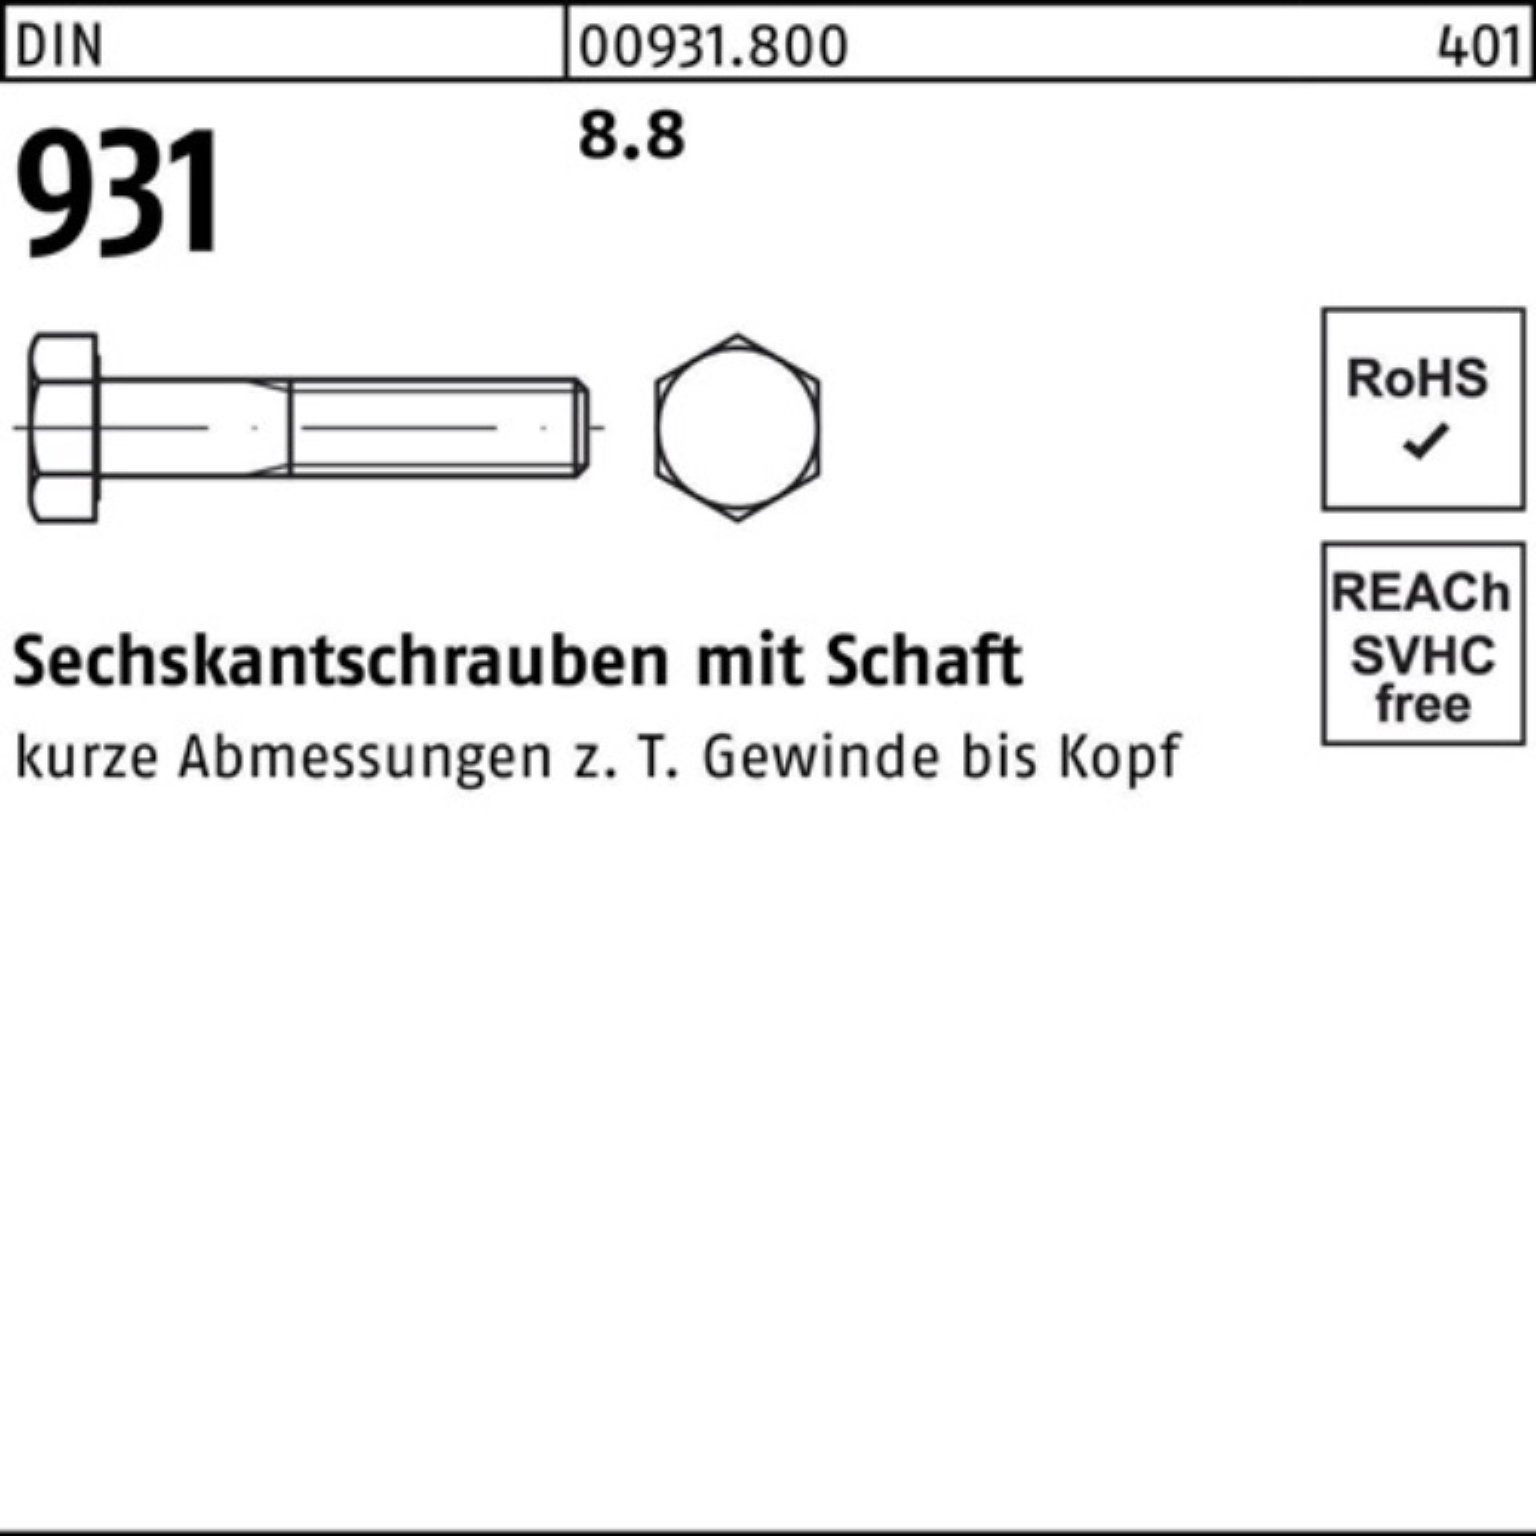 Reyher Sechskantschraube 100er Pack 8.8 M12x DIN 50 DIN Sechskantschraube Schaft 931 95 Stück